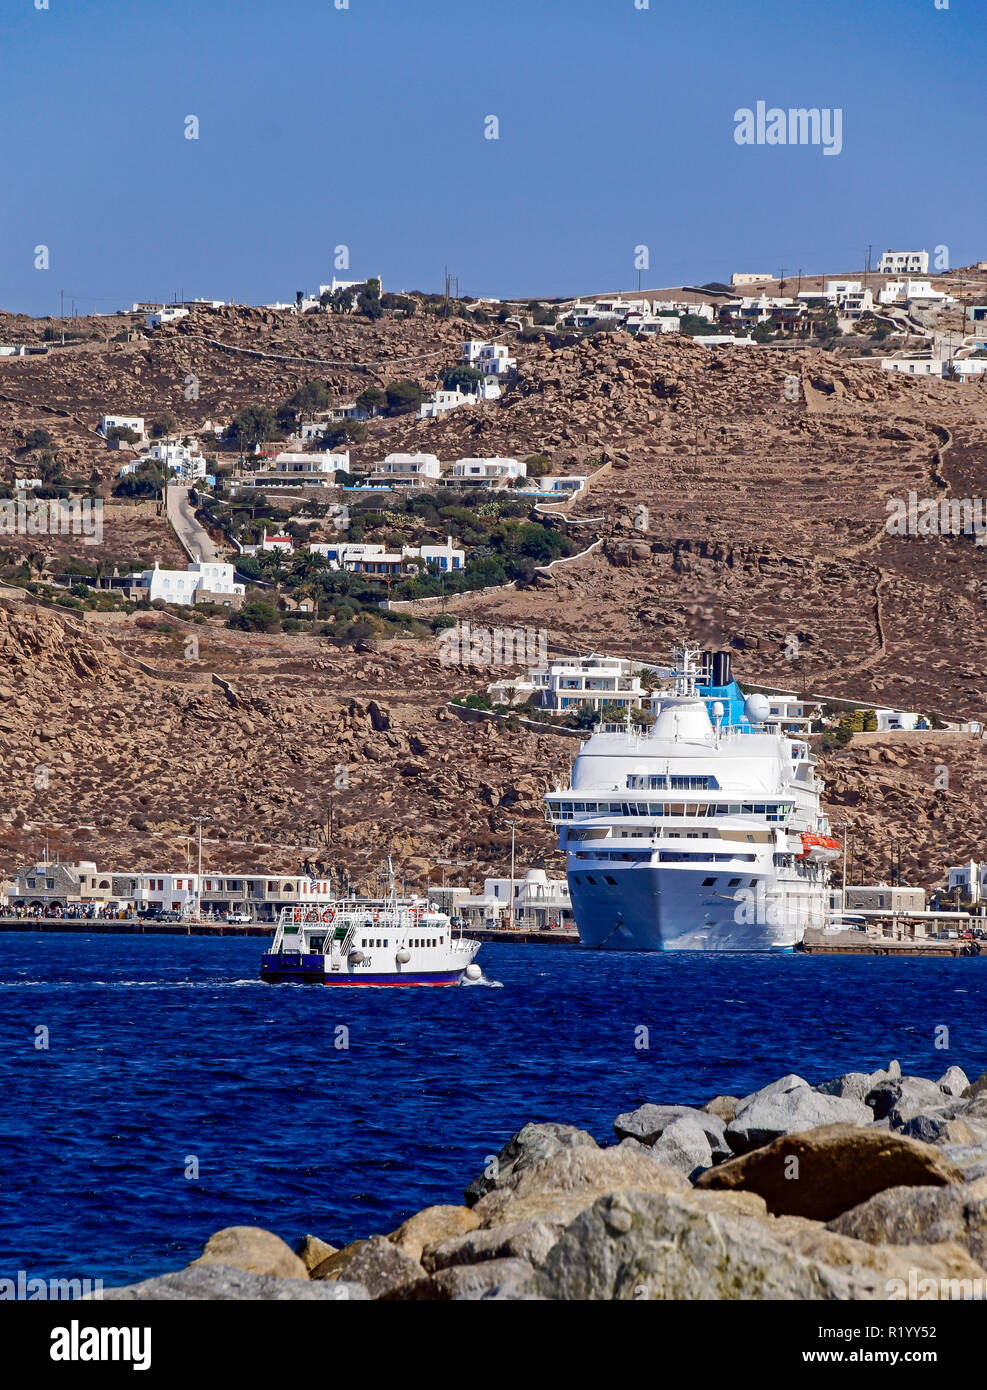 Celestyal Celestyal Croisières amarrés à Crystal Harbour sur l'île de Mykonos Mykonos Cyclades dans le groupe dans la mer Égée Grèce & Bus de mer à gauche Banque D'Images